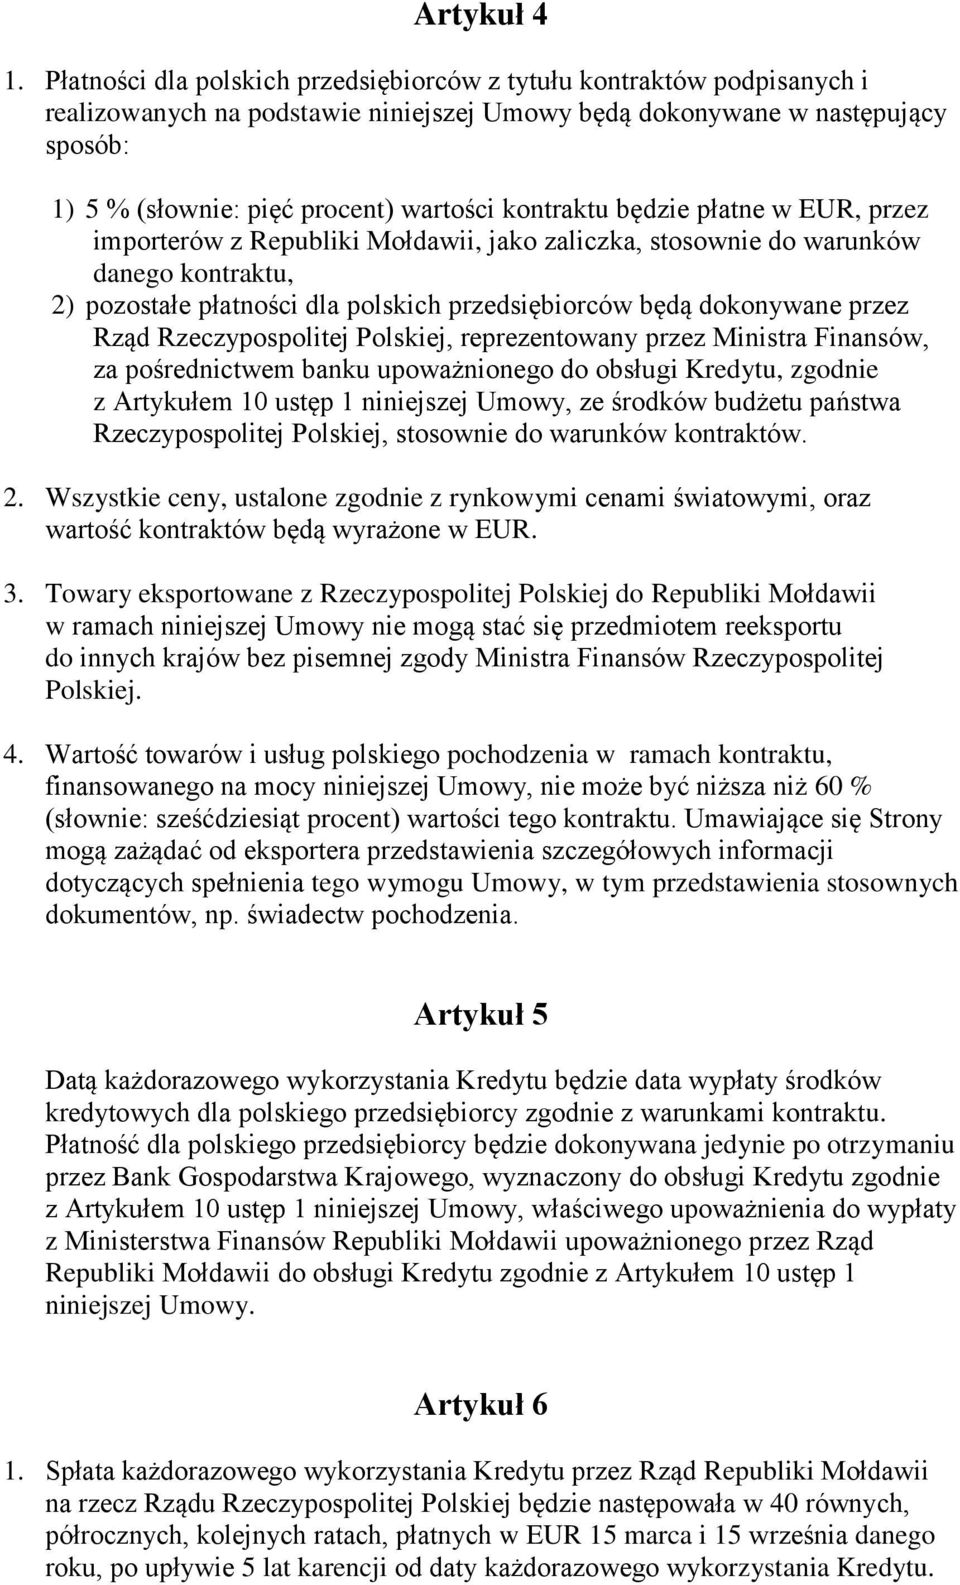 kontraktu będzie płatne w EUR, przez importerów z Republiki Mołdawii, jako zaliczka, stosownie do warunków danego kontraktu, 2) pozostałe płatności dla polskich przedsiębiorców będą dokonywane przez